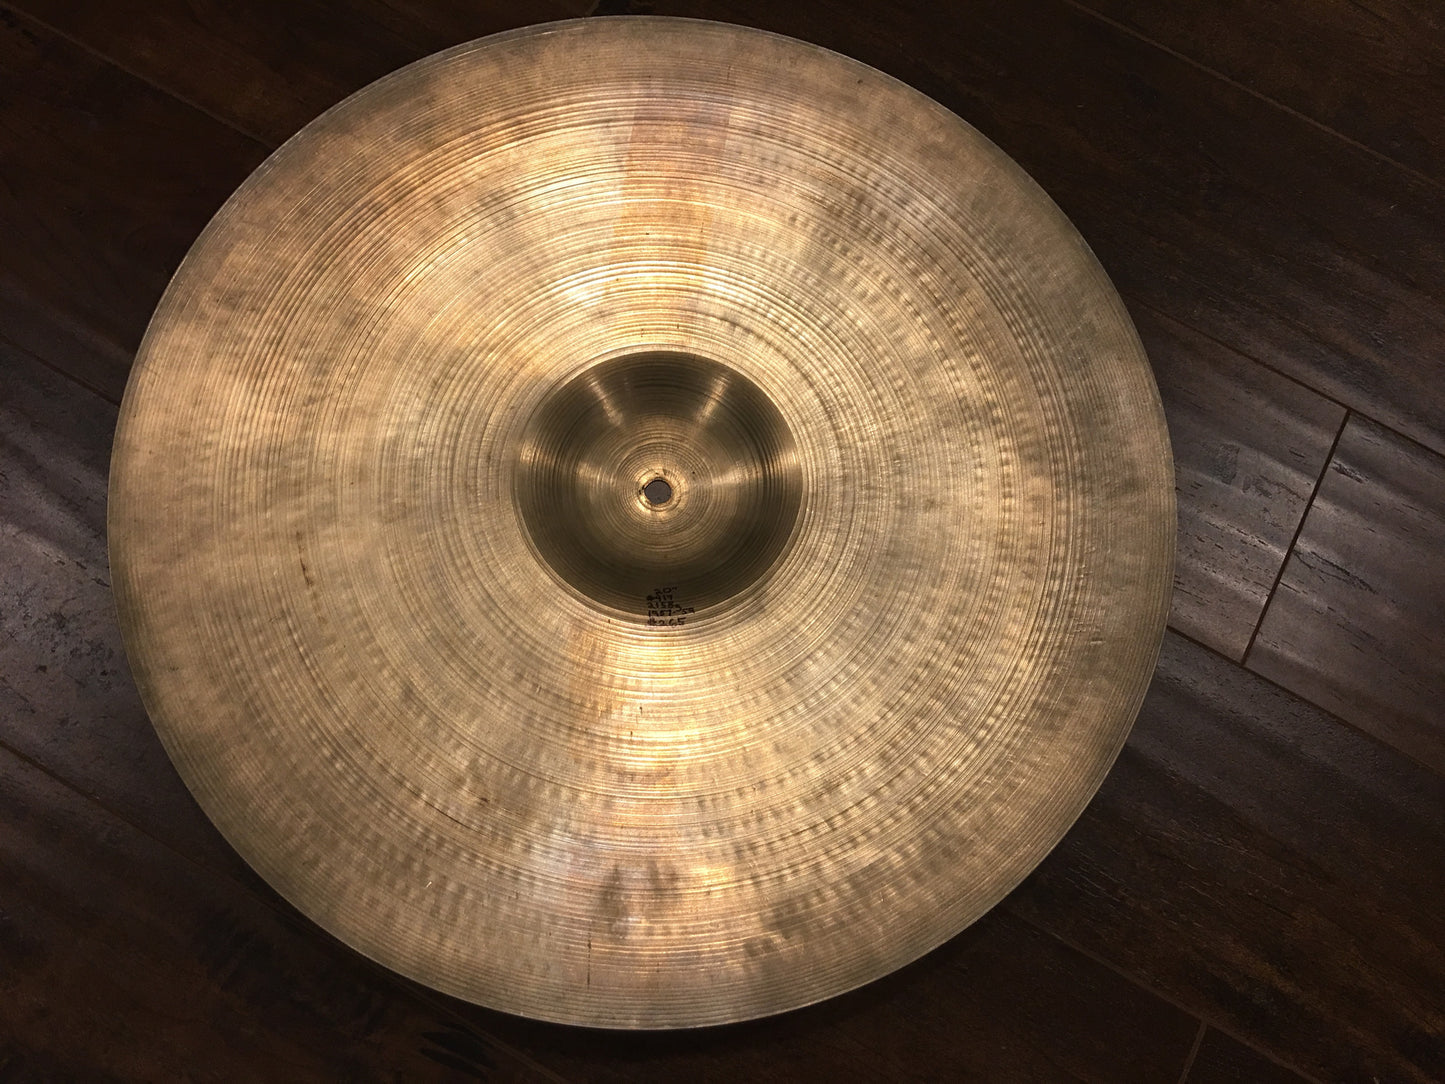 20" Zildjian A 1950s Ride Cymbal 2154g #419